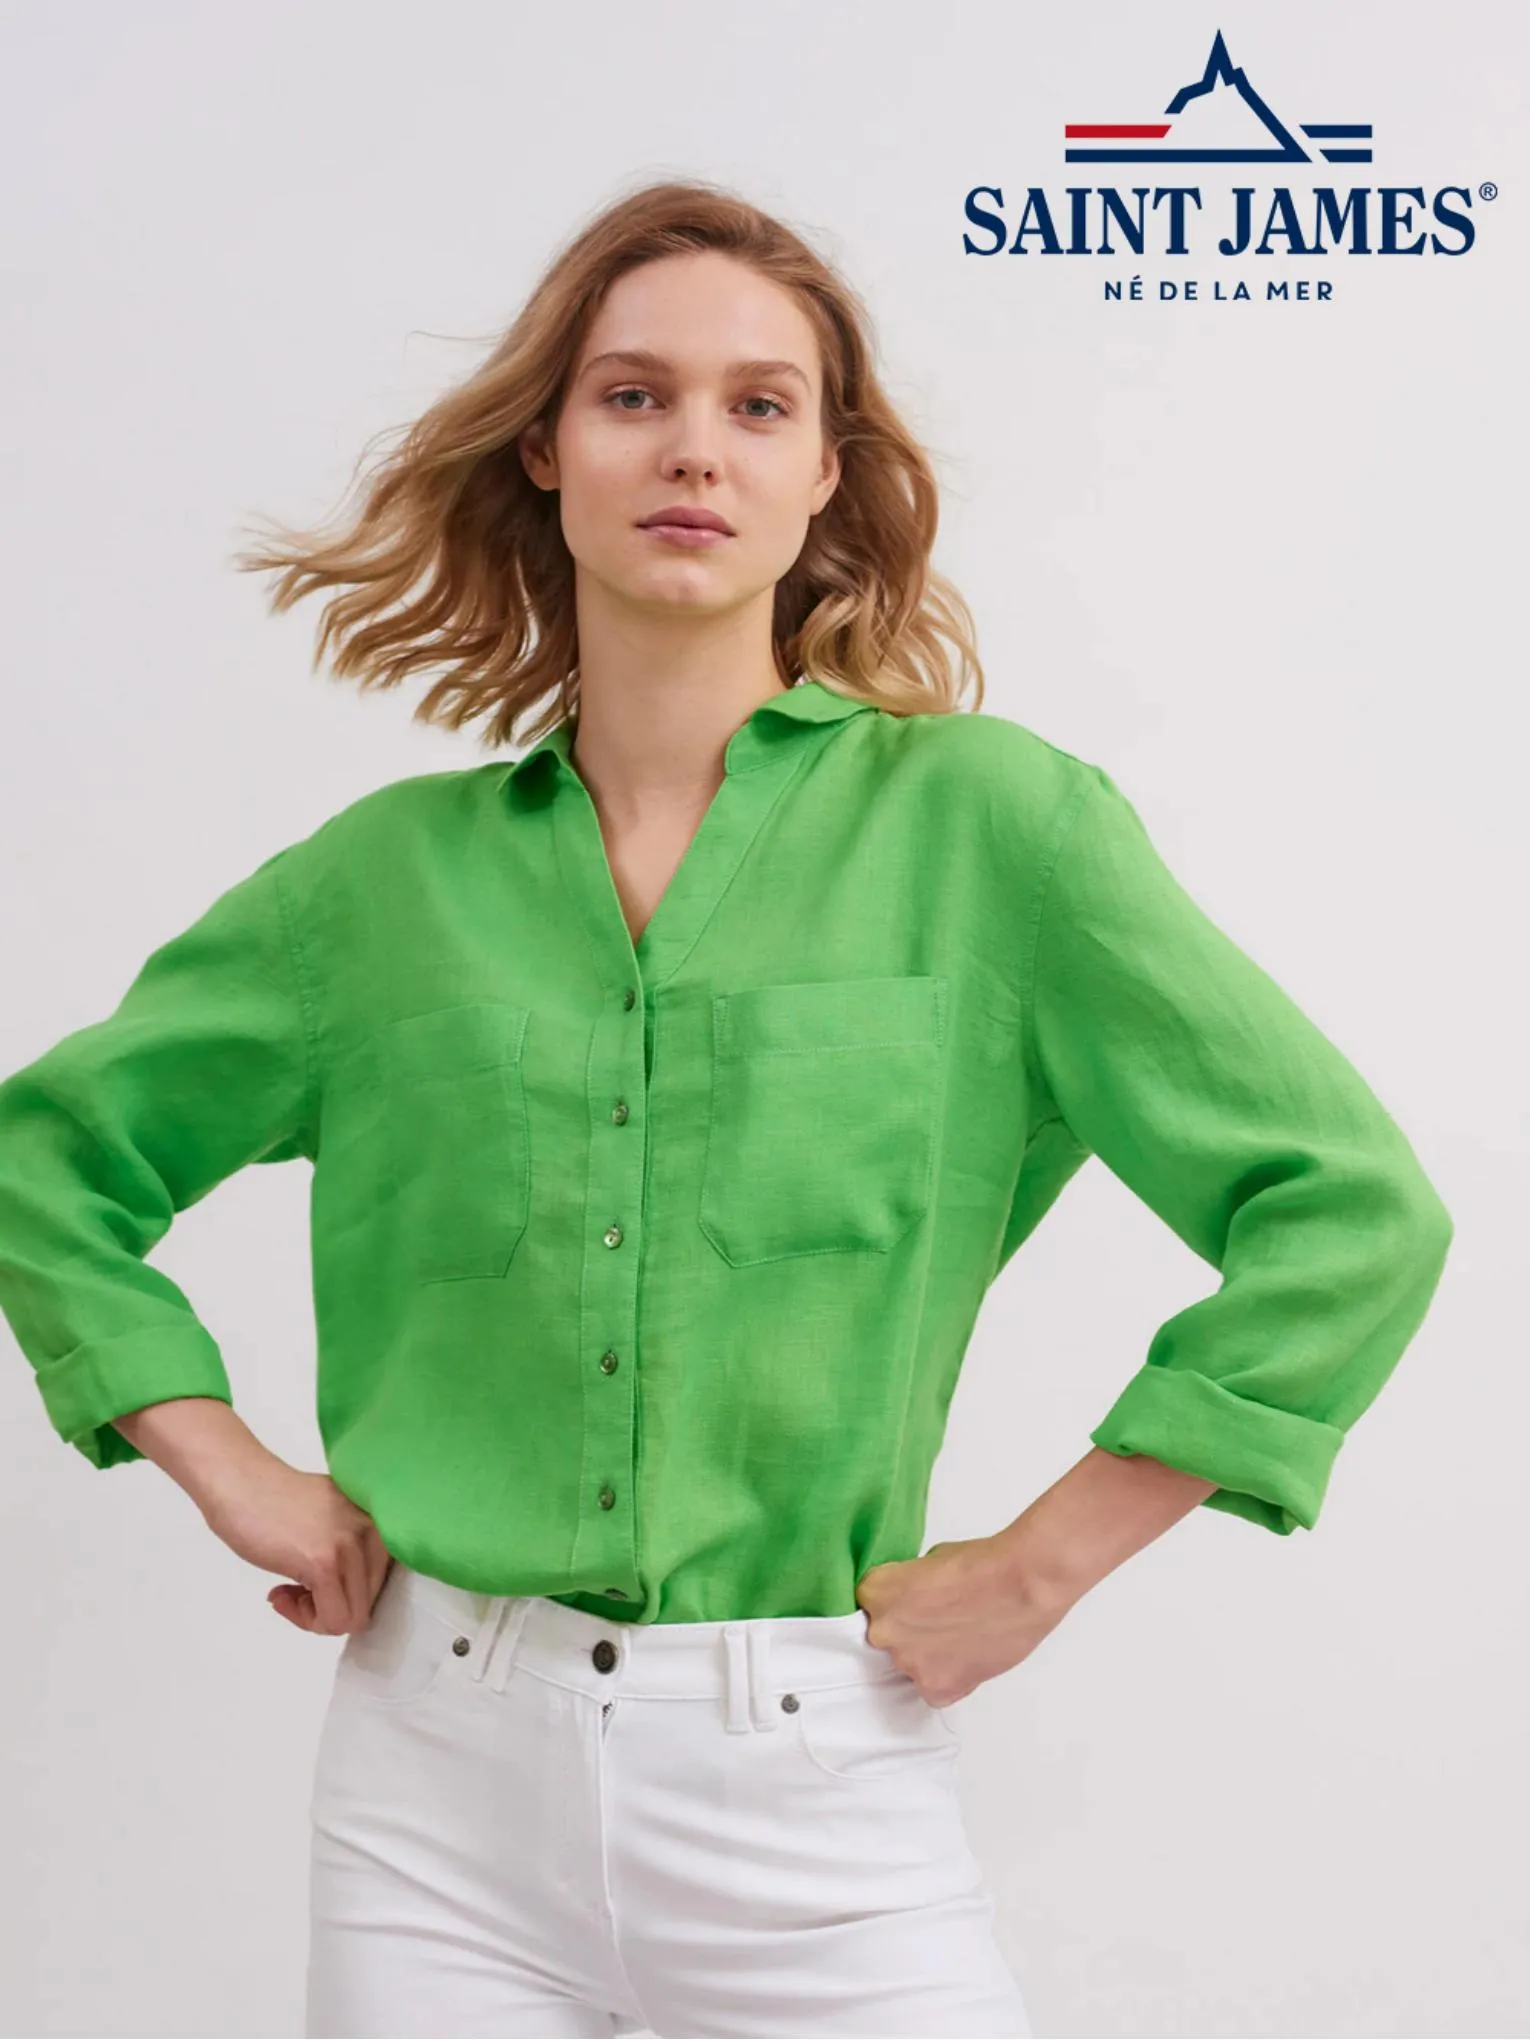 Catalogue Chemises & blouses, page 00001